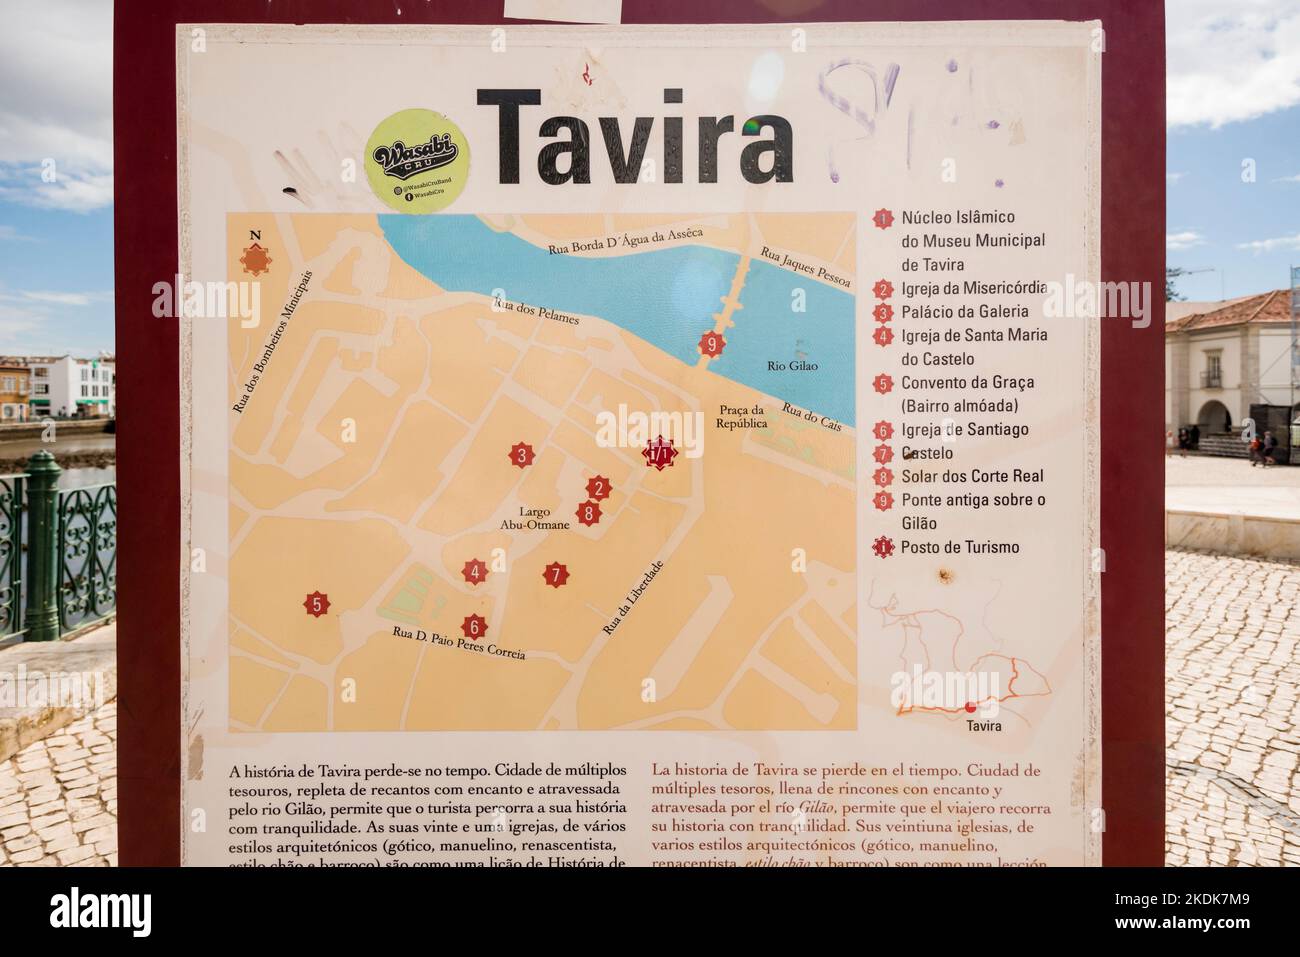 Historic Map - Mapa Dos Reynos De Portugal E Algarve Feita sobre as Me -  Historic Pictoric